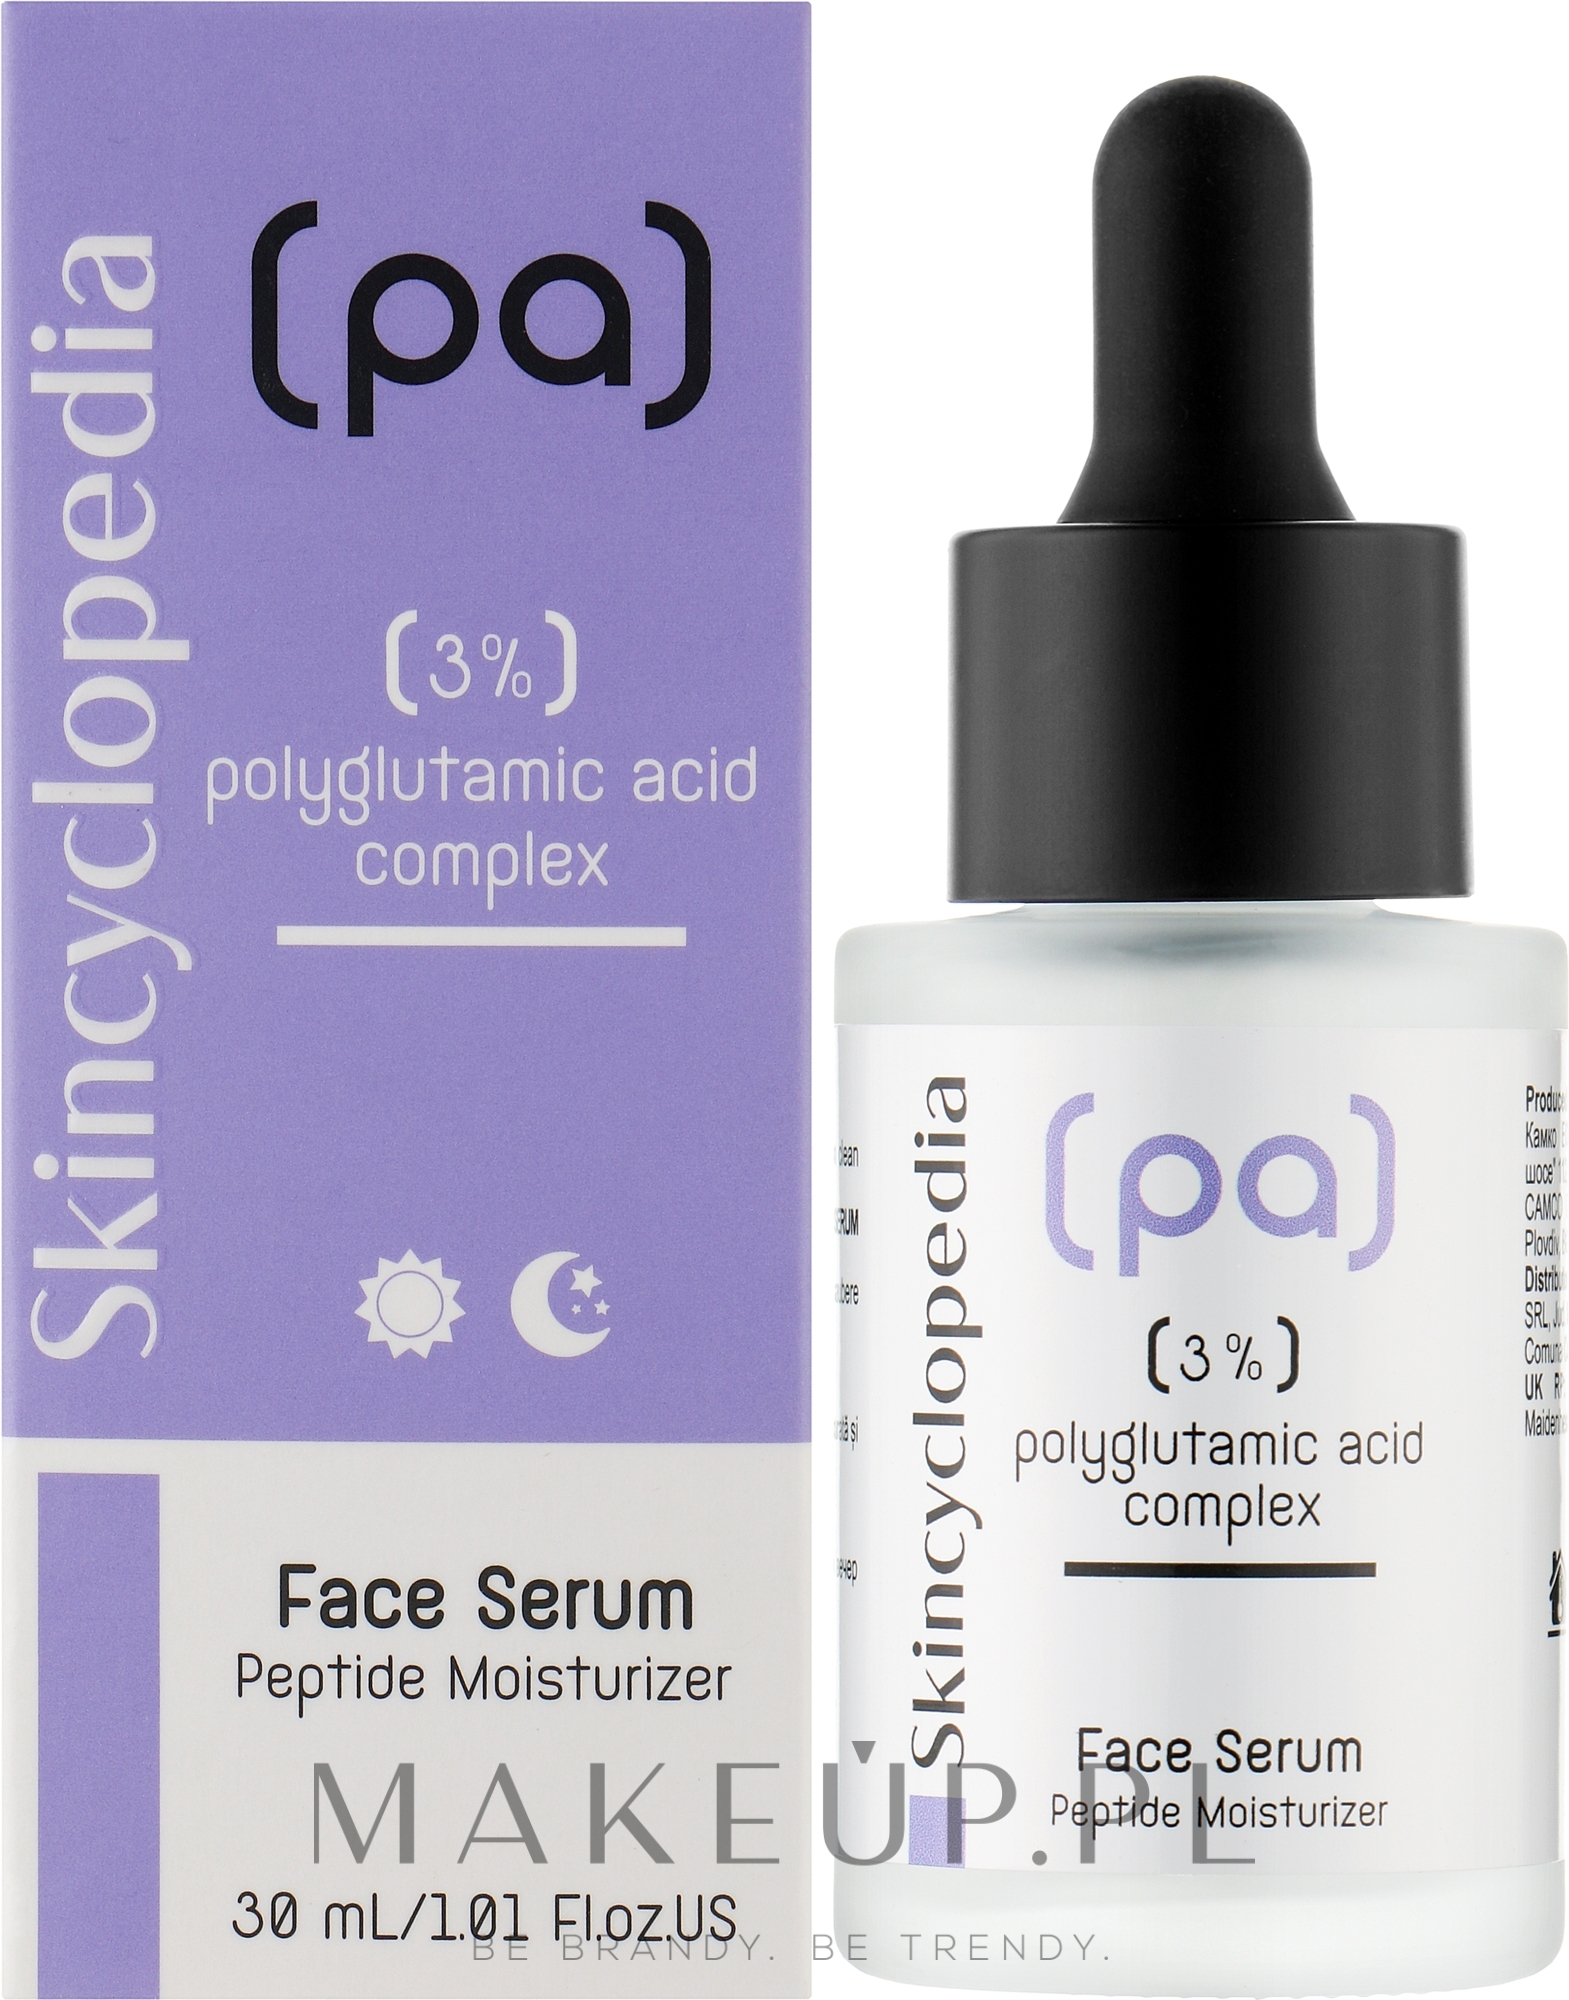 Nawilżające serum do twarzy z kwasem poliglutaminowym - Skincyclopedia Concentrated Face Serum With 3% Polyglutamic Acid Complex — Zdjęcie 30 ml